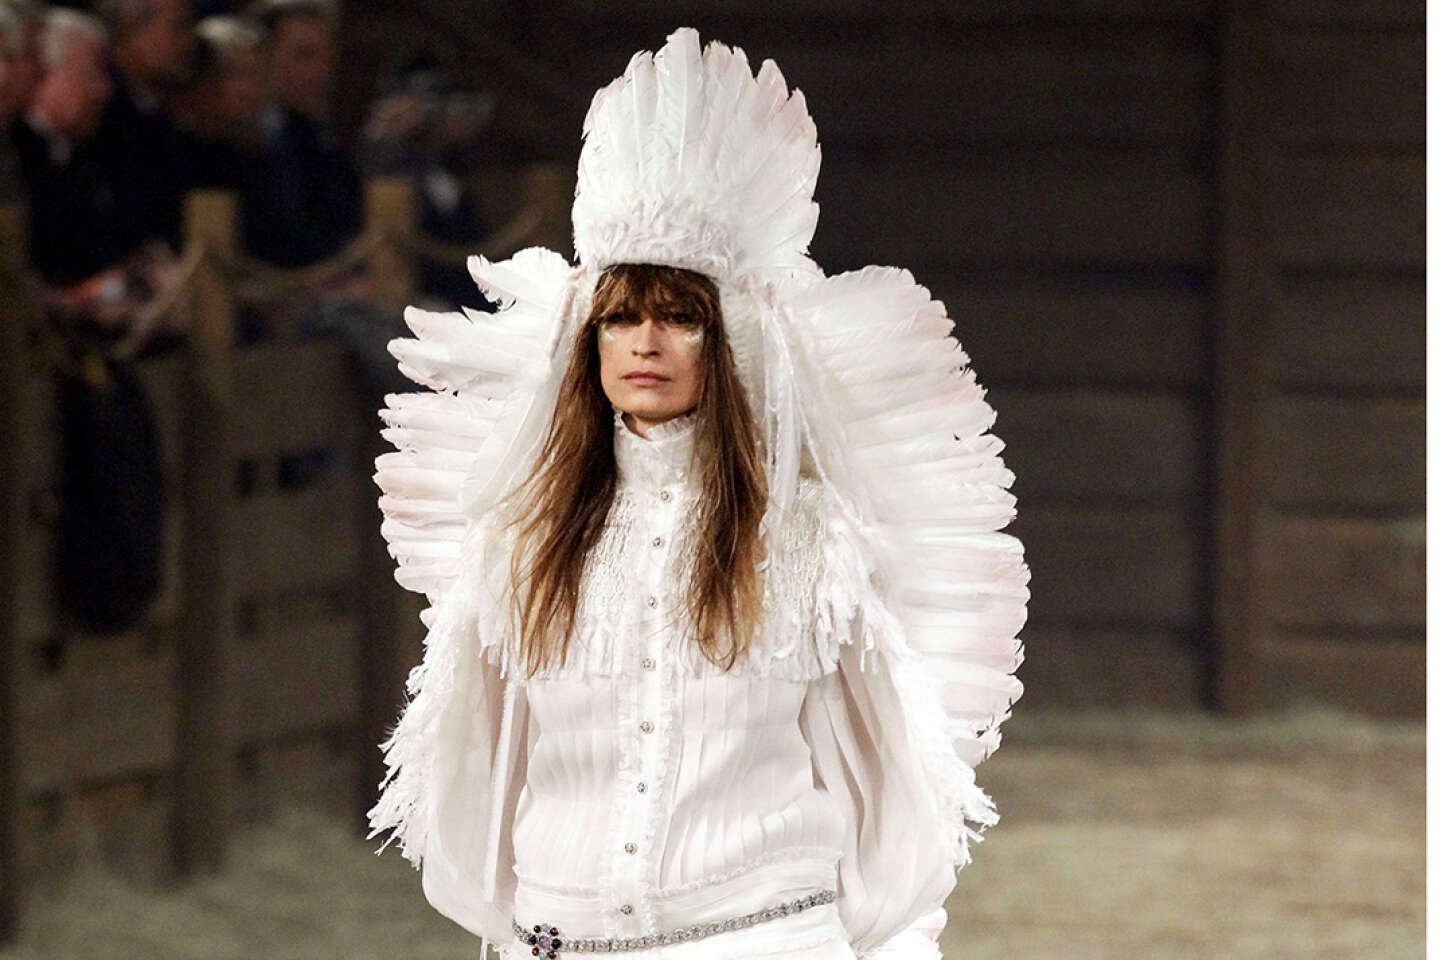 De Louis Vuitton à Chanel, les polémiques répétées d’appropriation culturelle dans la mode